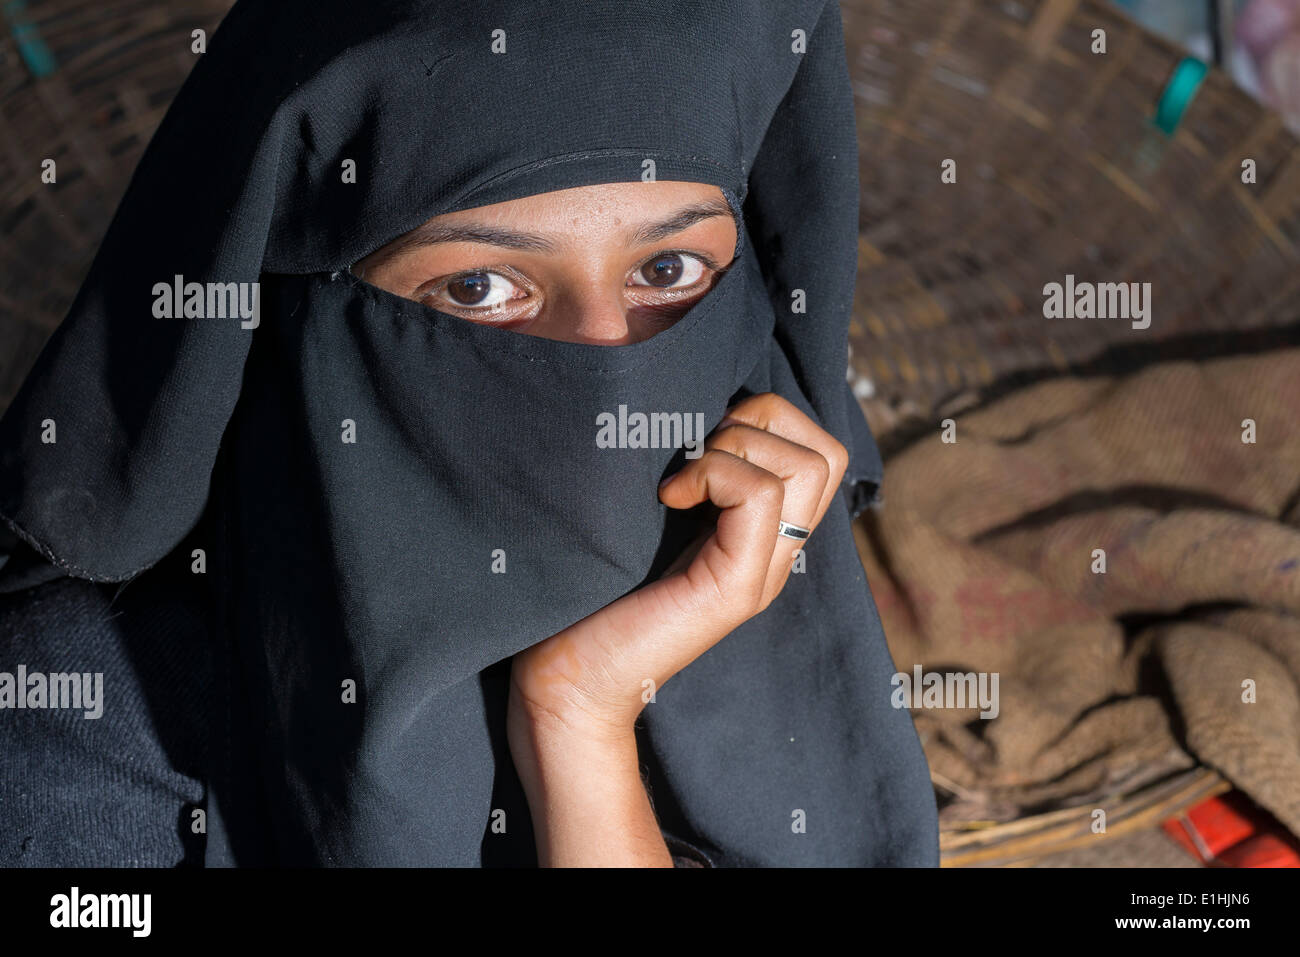 Woman wearing a hijab, Bangalore, Karnataka, India Stock Photo